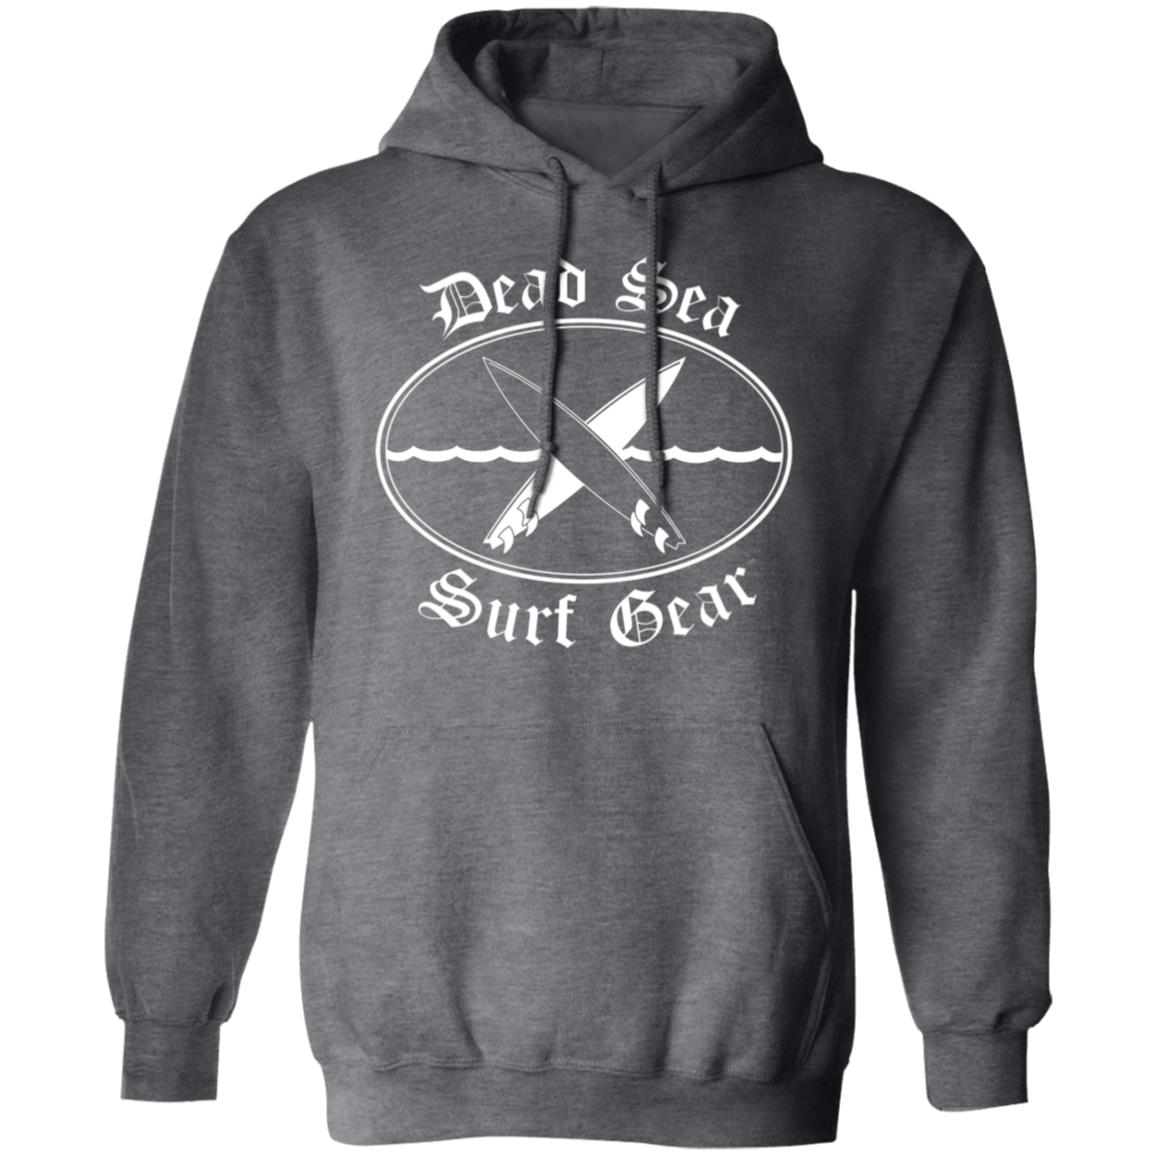 Dead Sea Surf Gear Men/Women Unisex Hoodie Sweatshirt